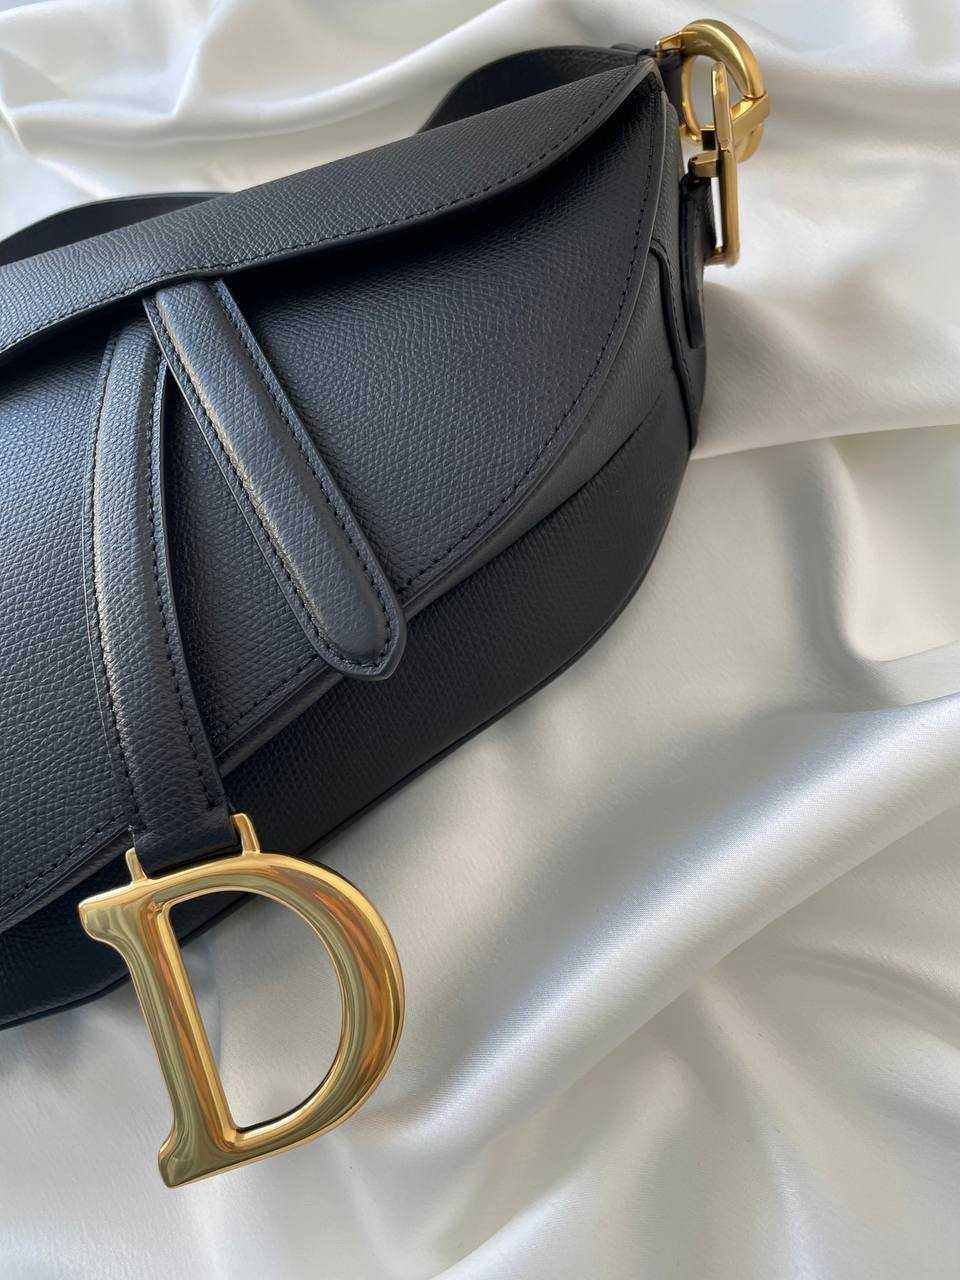 Dior Original Saddle Bag